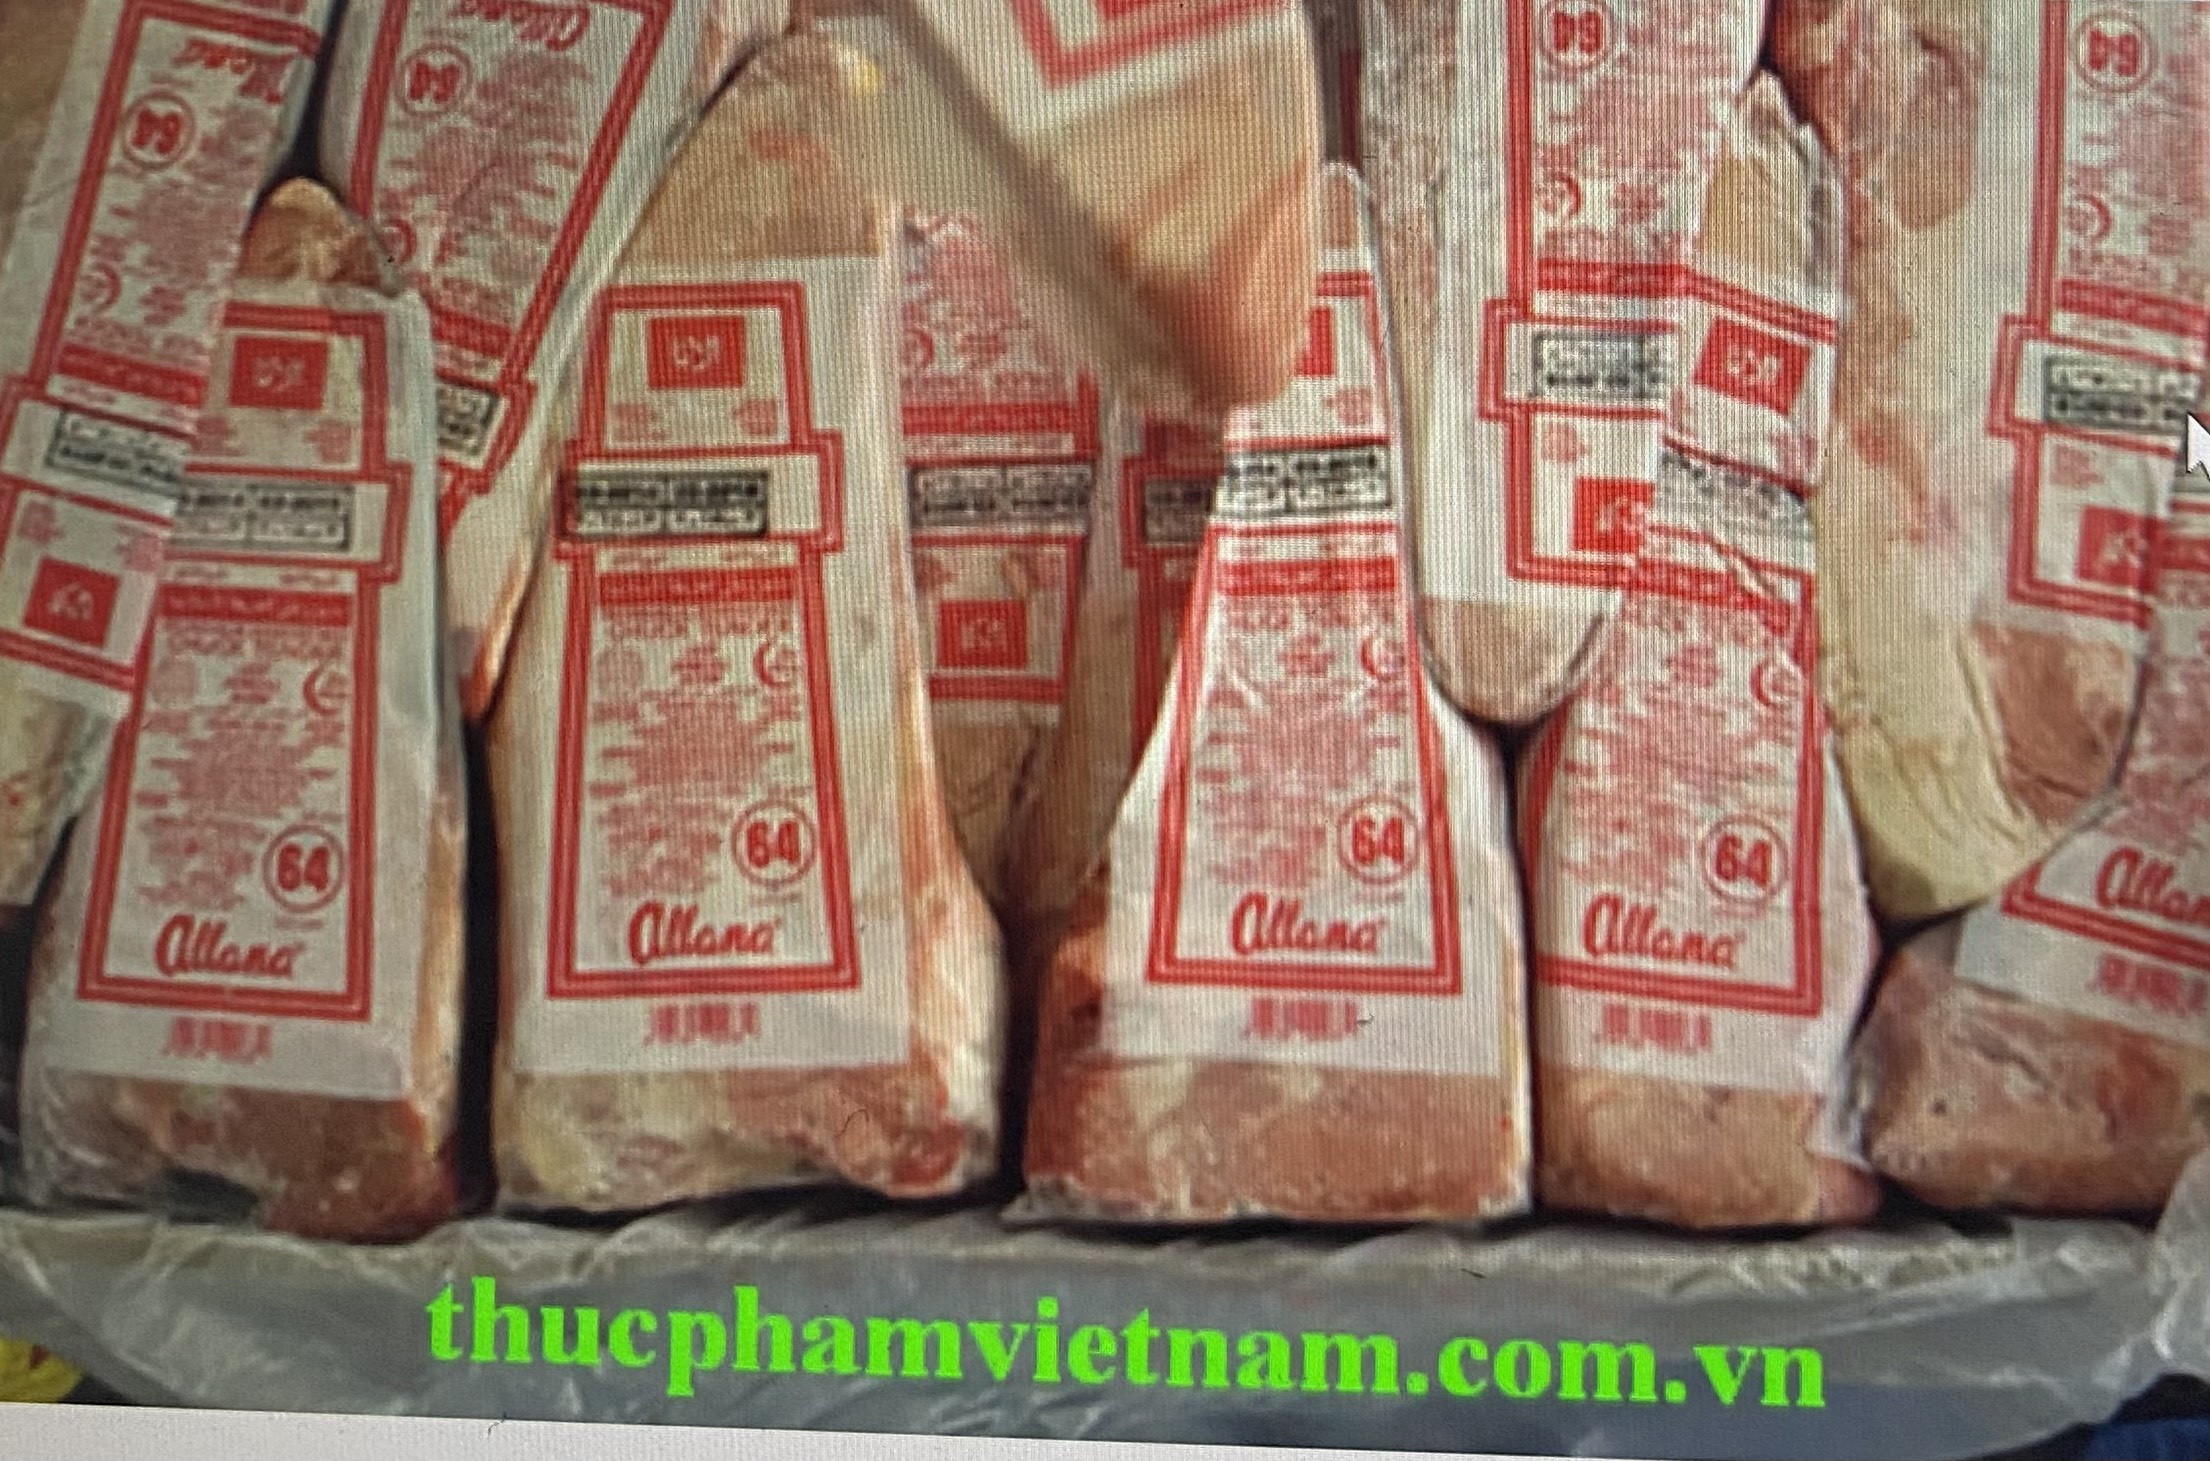 Thịt bắp cá lóc Trâu Ấn Độ - M64 giá tốt tại Hà nội